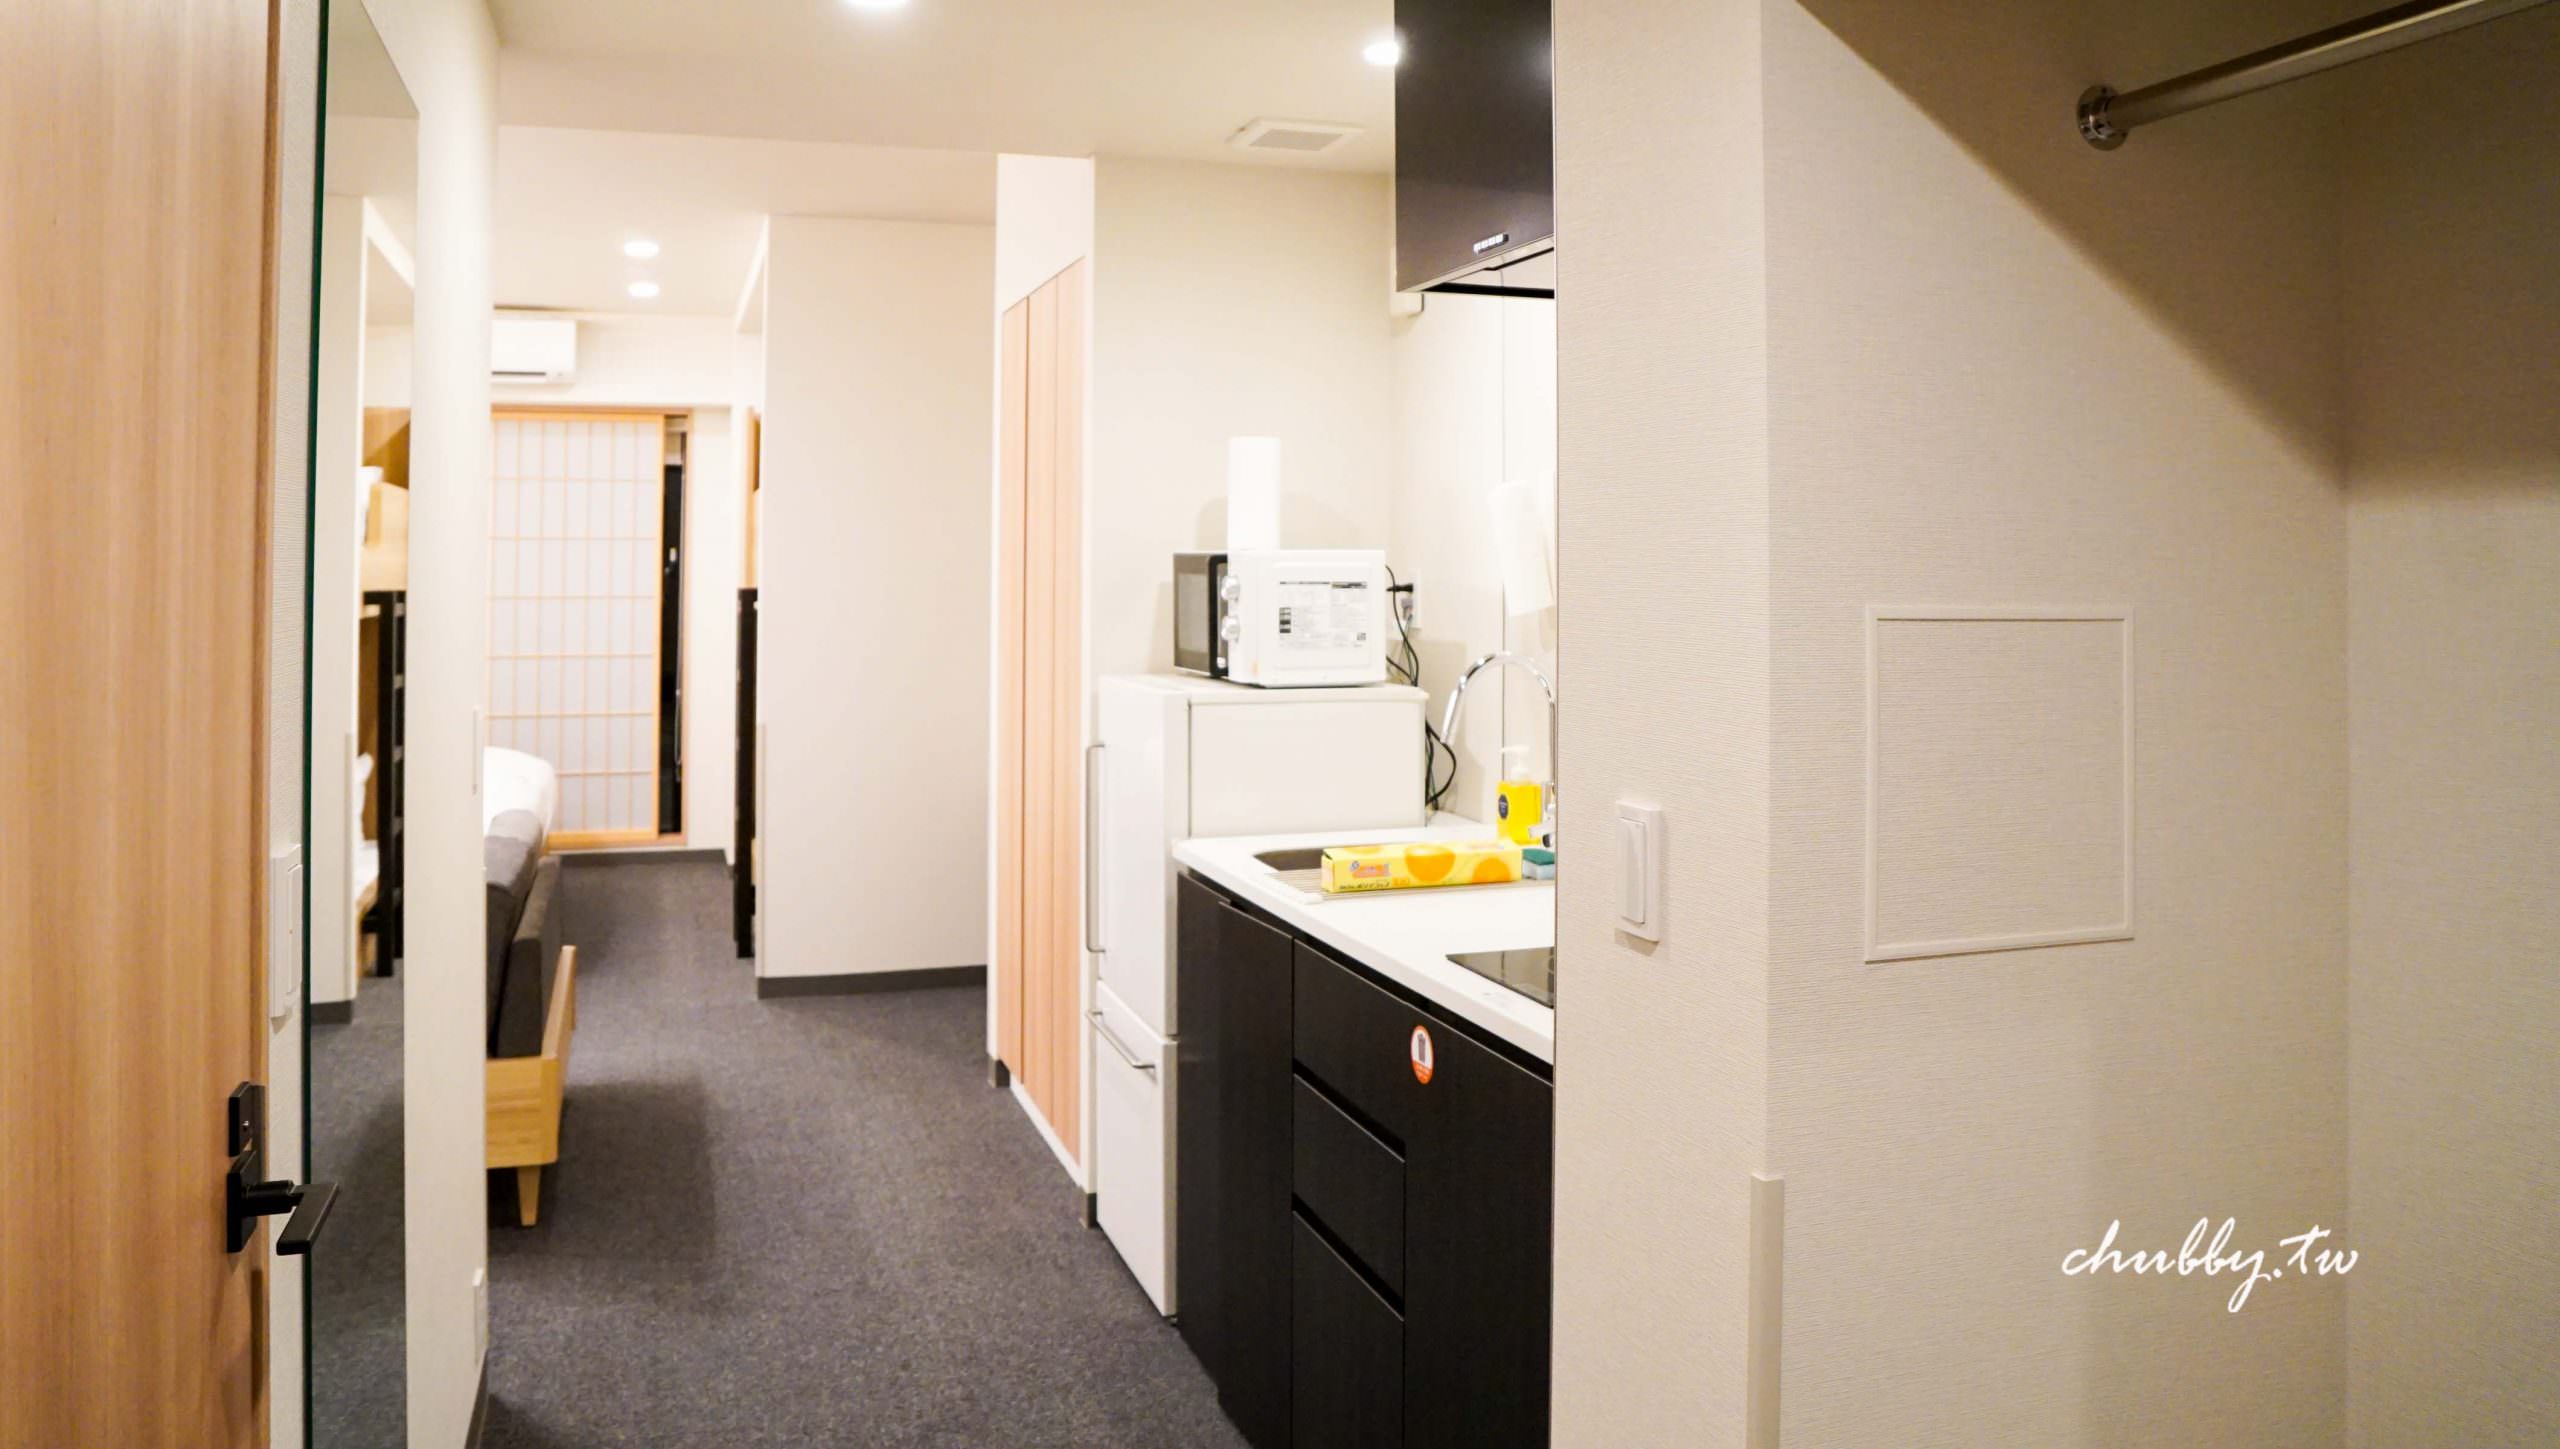 銀座飯店推薦：MIMARU東京銀座EAST，投影電視牆！像自己家一樣便利的公寓式酒店